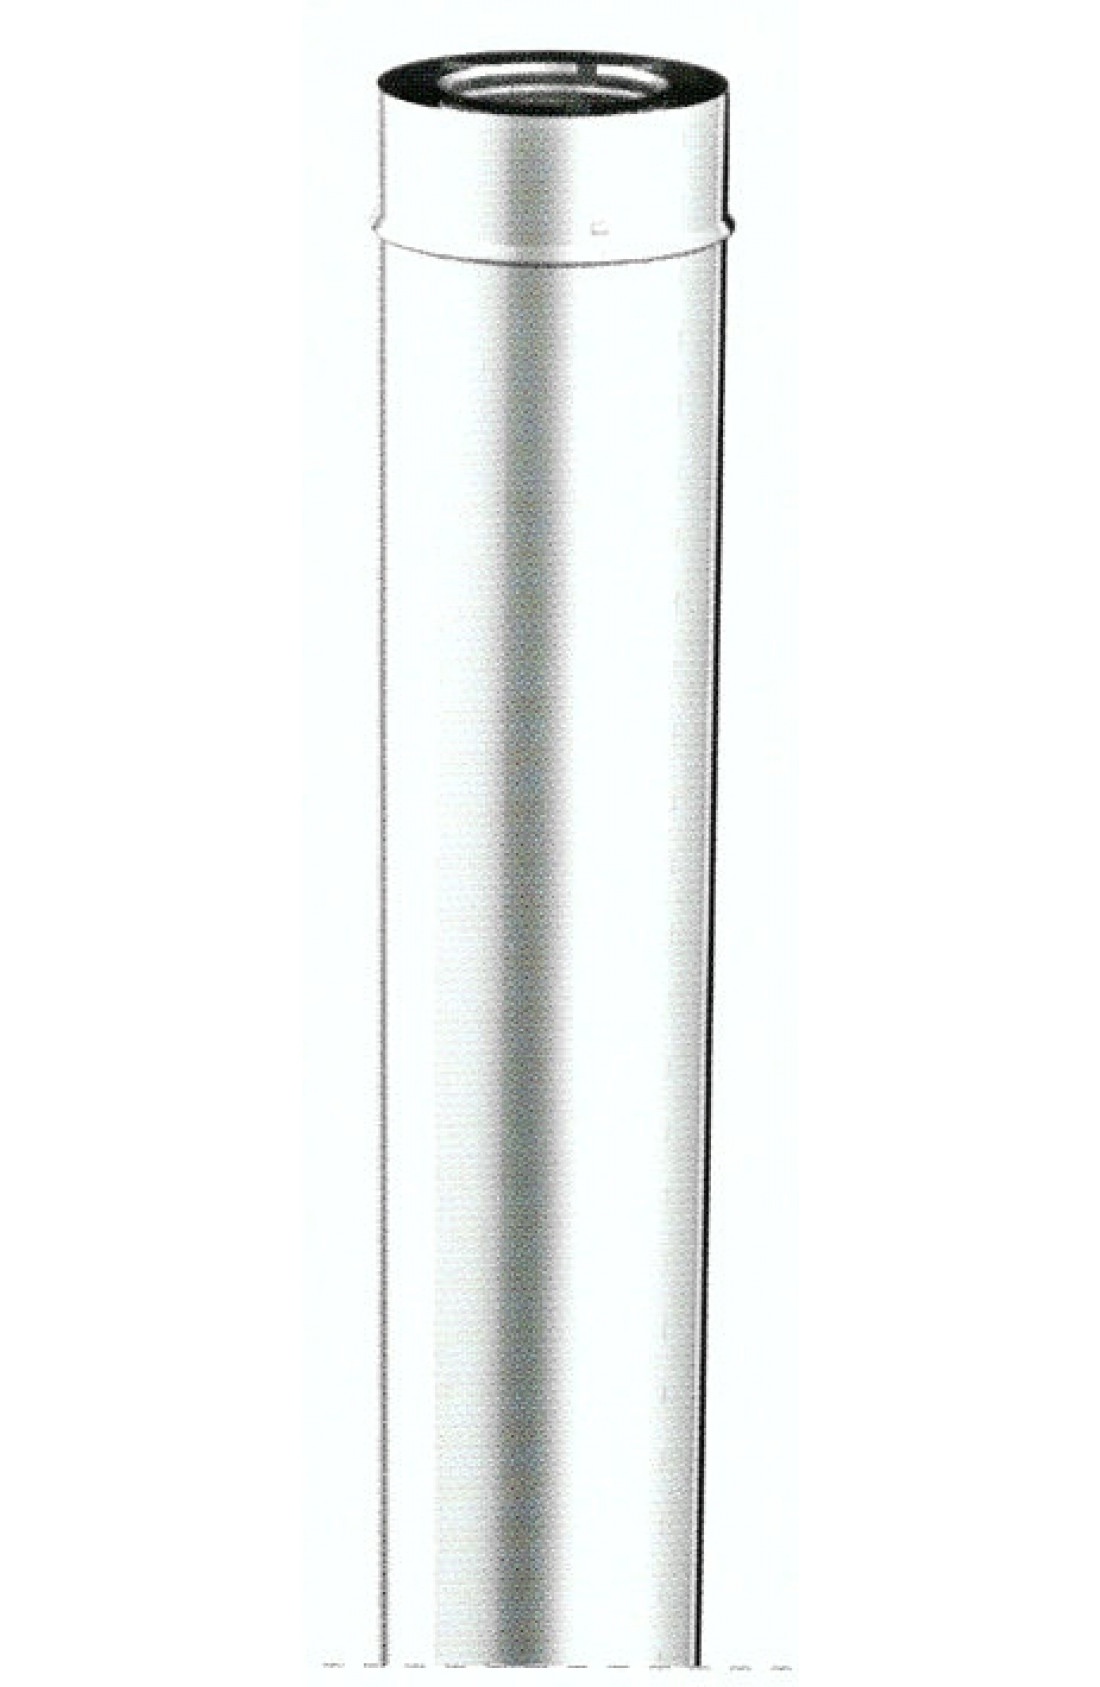 Tubo lineare in acciaio inox L1000mm diam. 100/150mm 